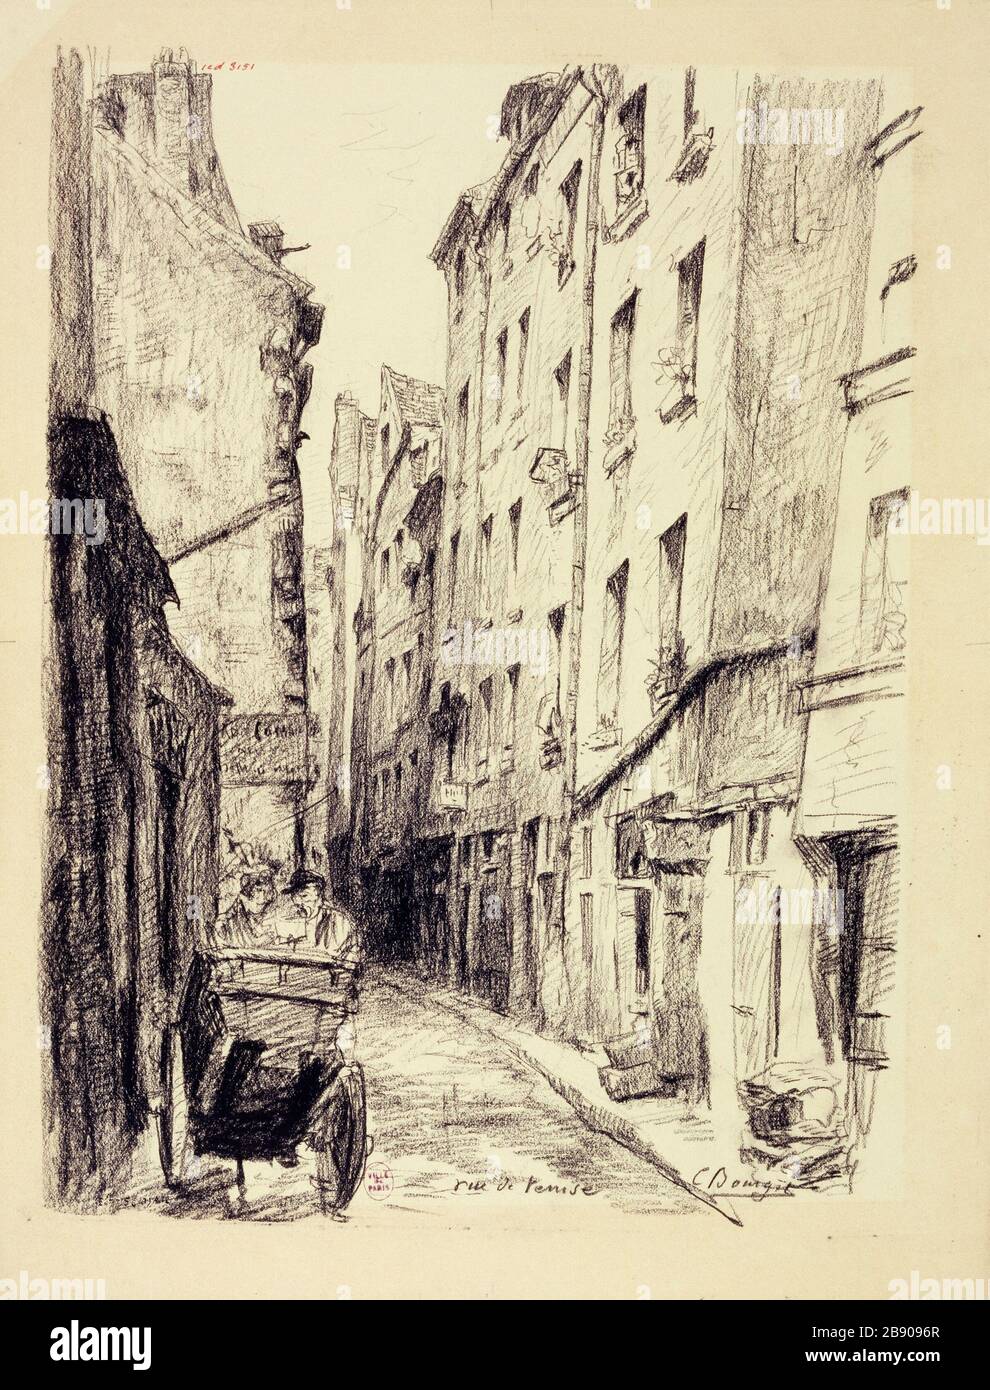 The street of Venice Camille Bourget. La rue de Venise. Paris (IVème arr.), 1801-1900. Crayon sur papier crème. Paris, musée Carnavalet. Stock Photo